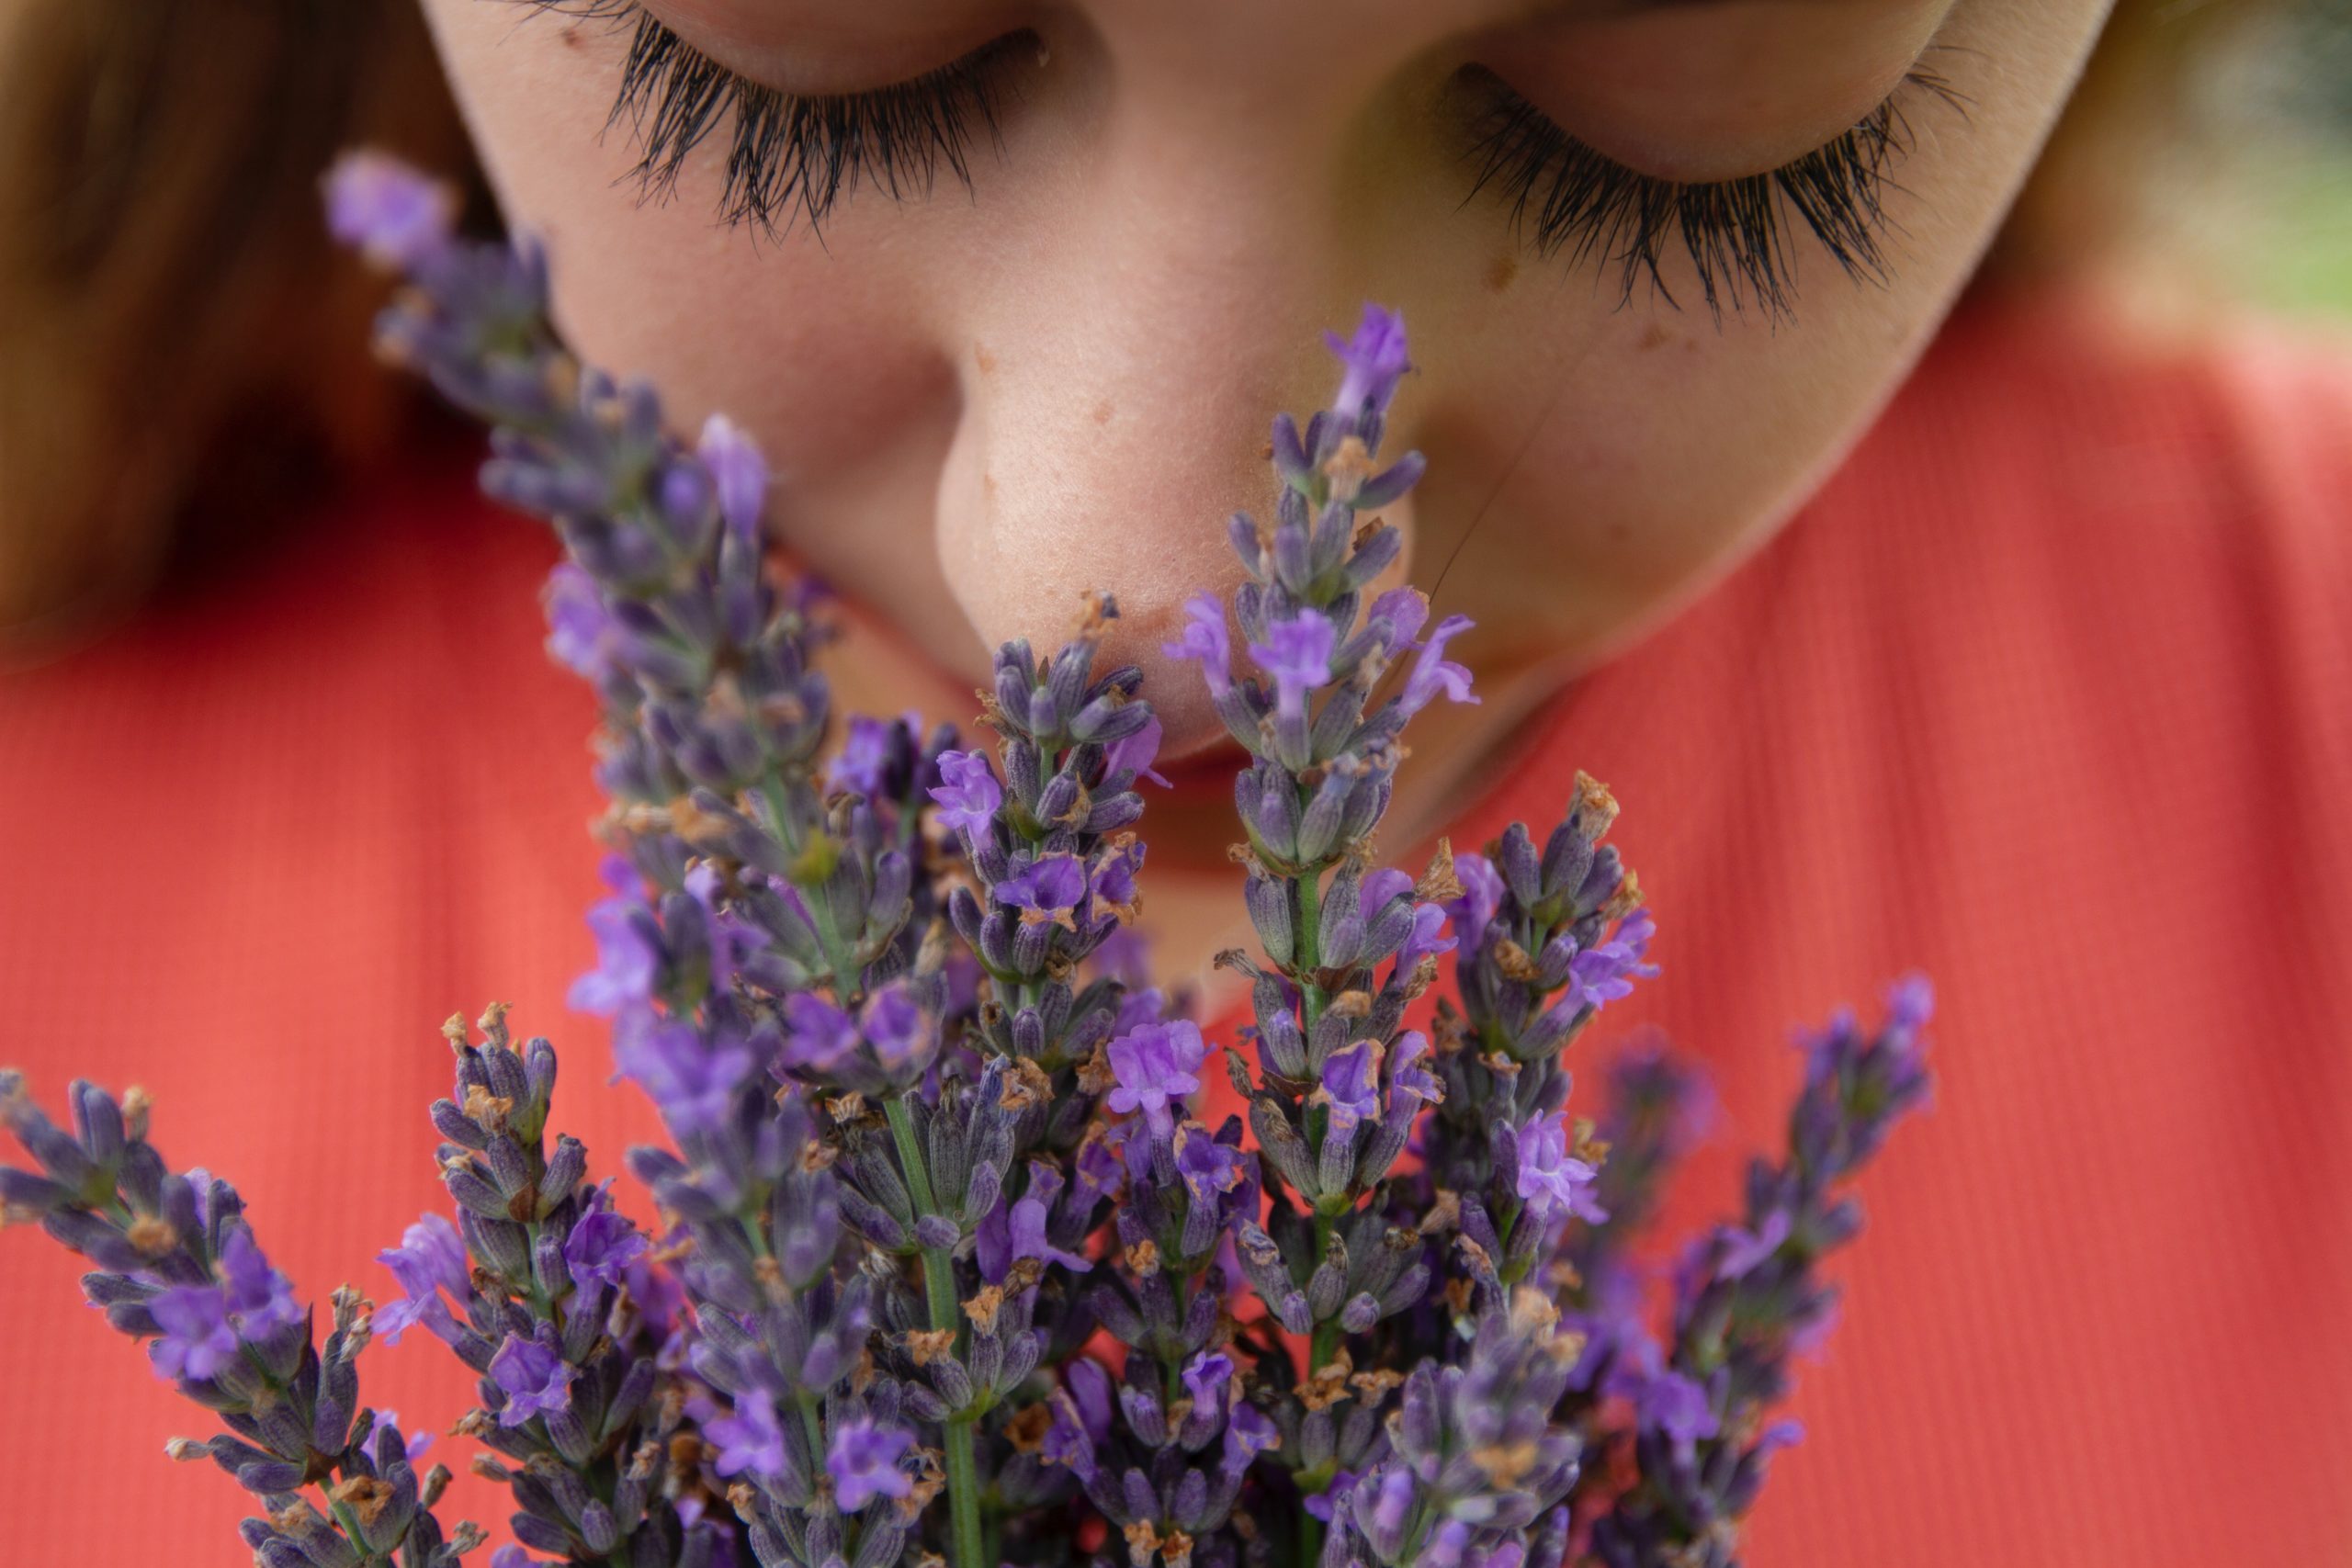 Las emociones huelen: cómo la aromaterapia despierta tu memoria sentimental